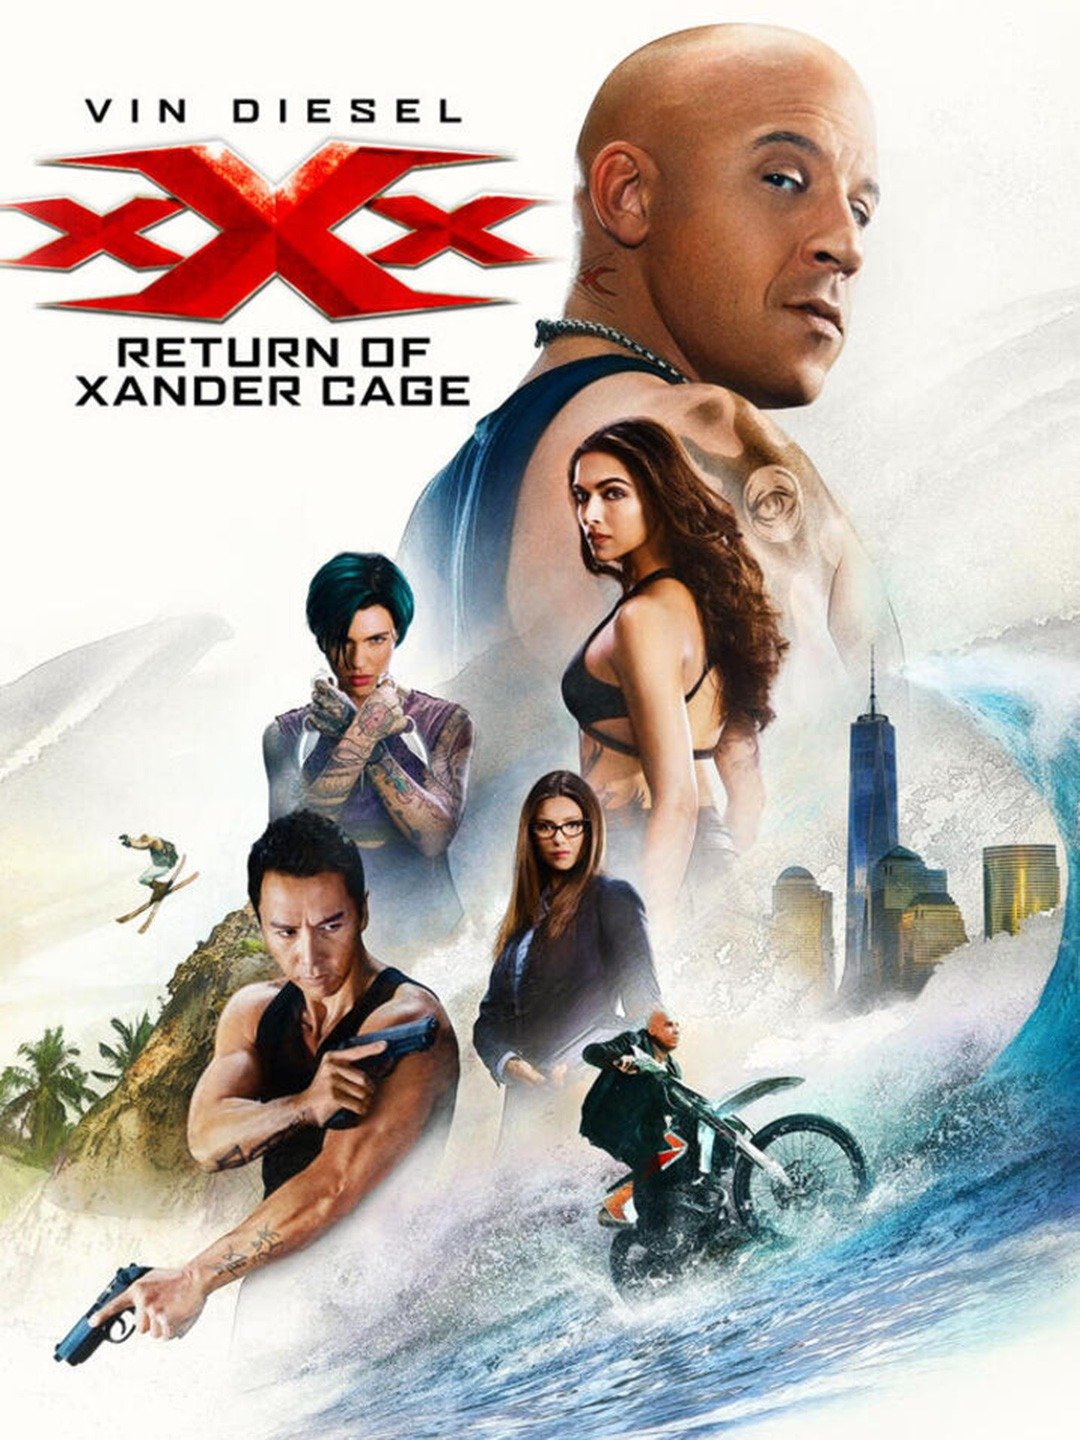 Xxx Saxi Movi - xXx: Return of Xander Cage - Rotten Tomatoes